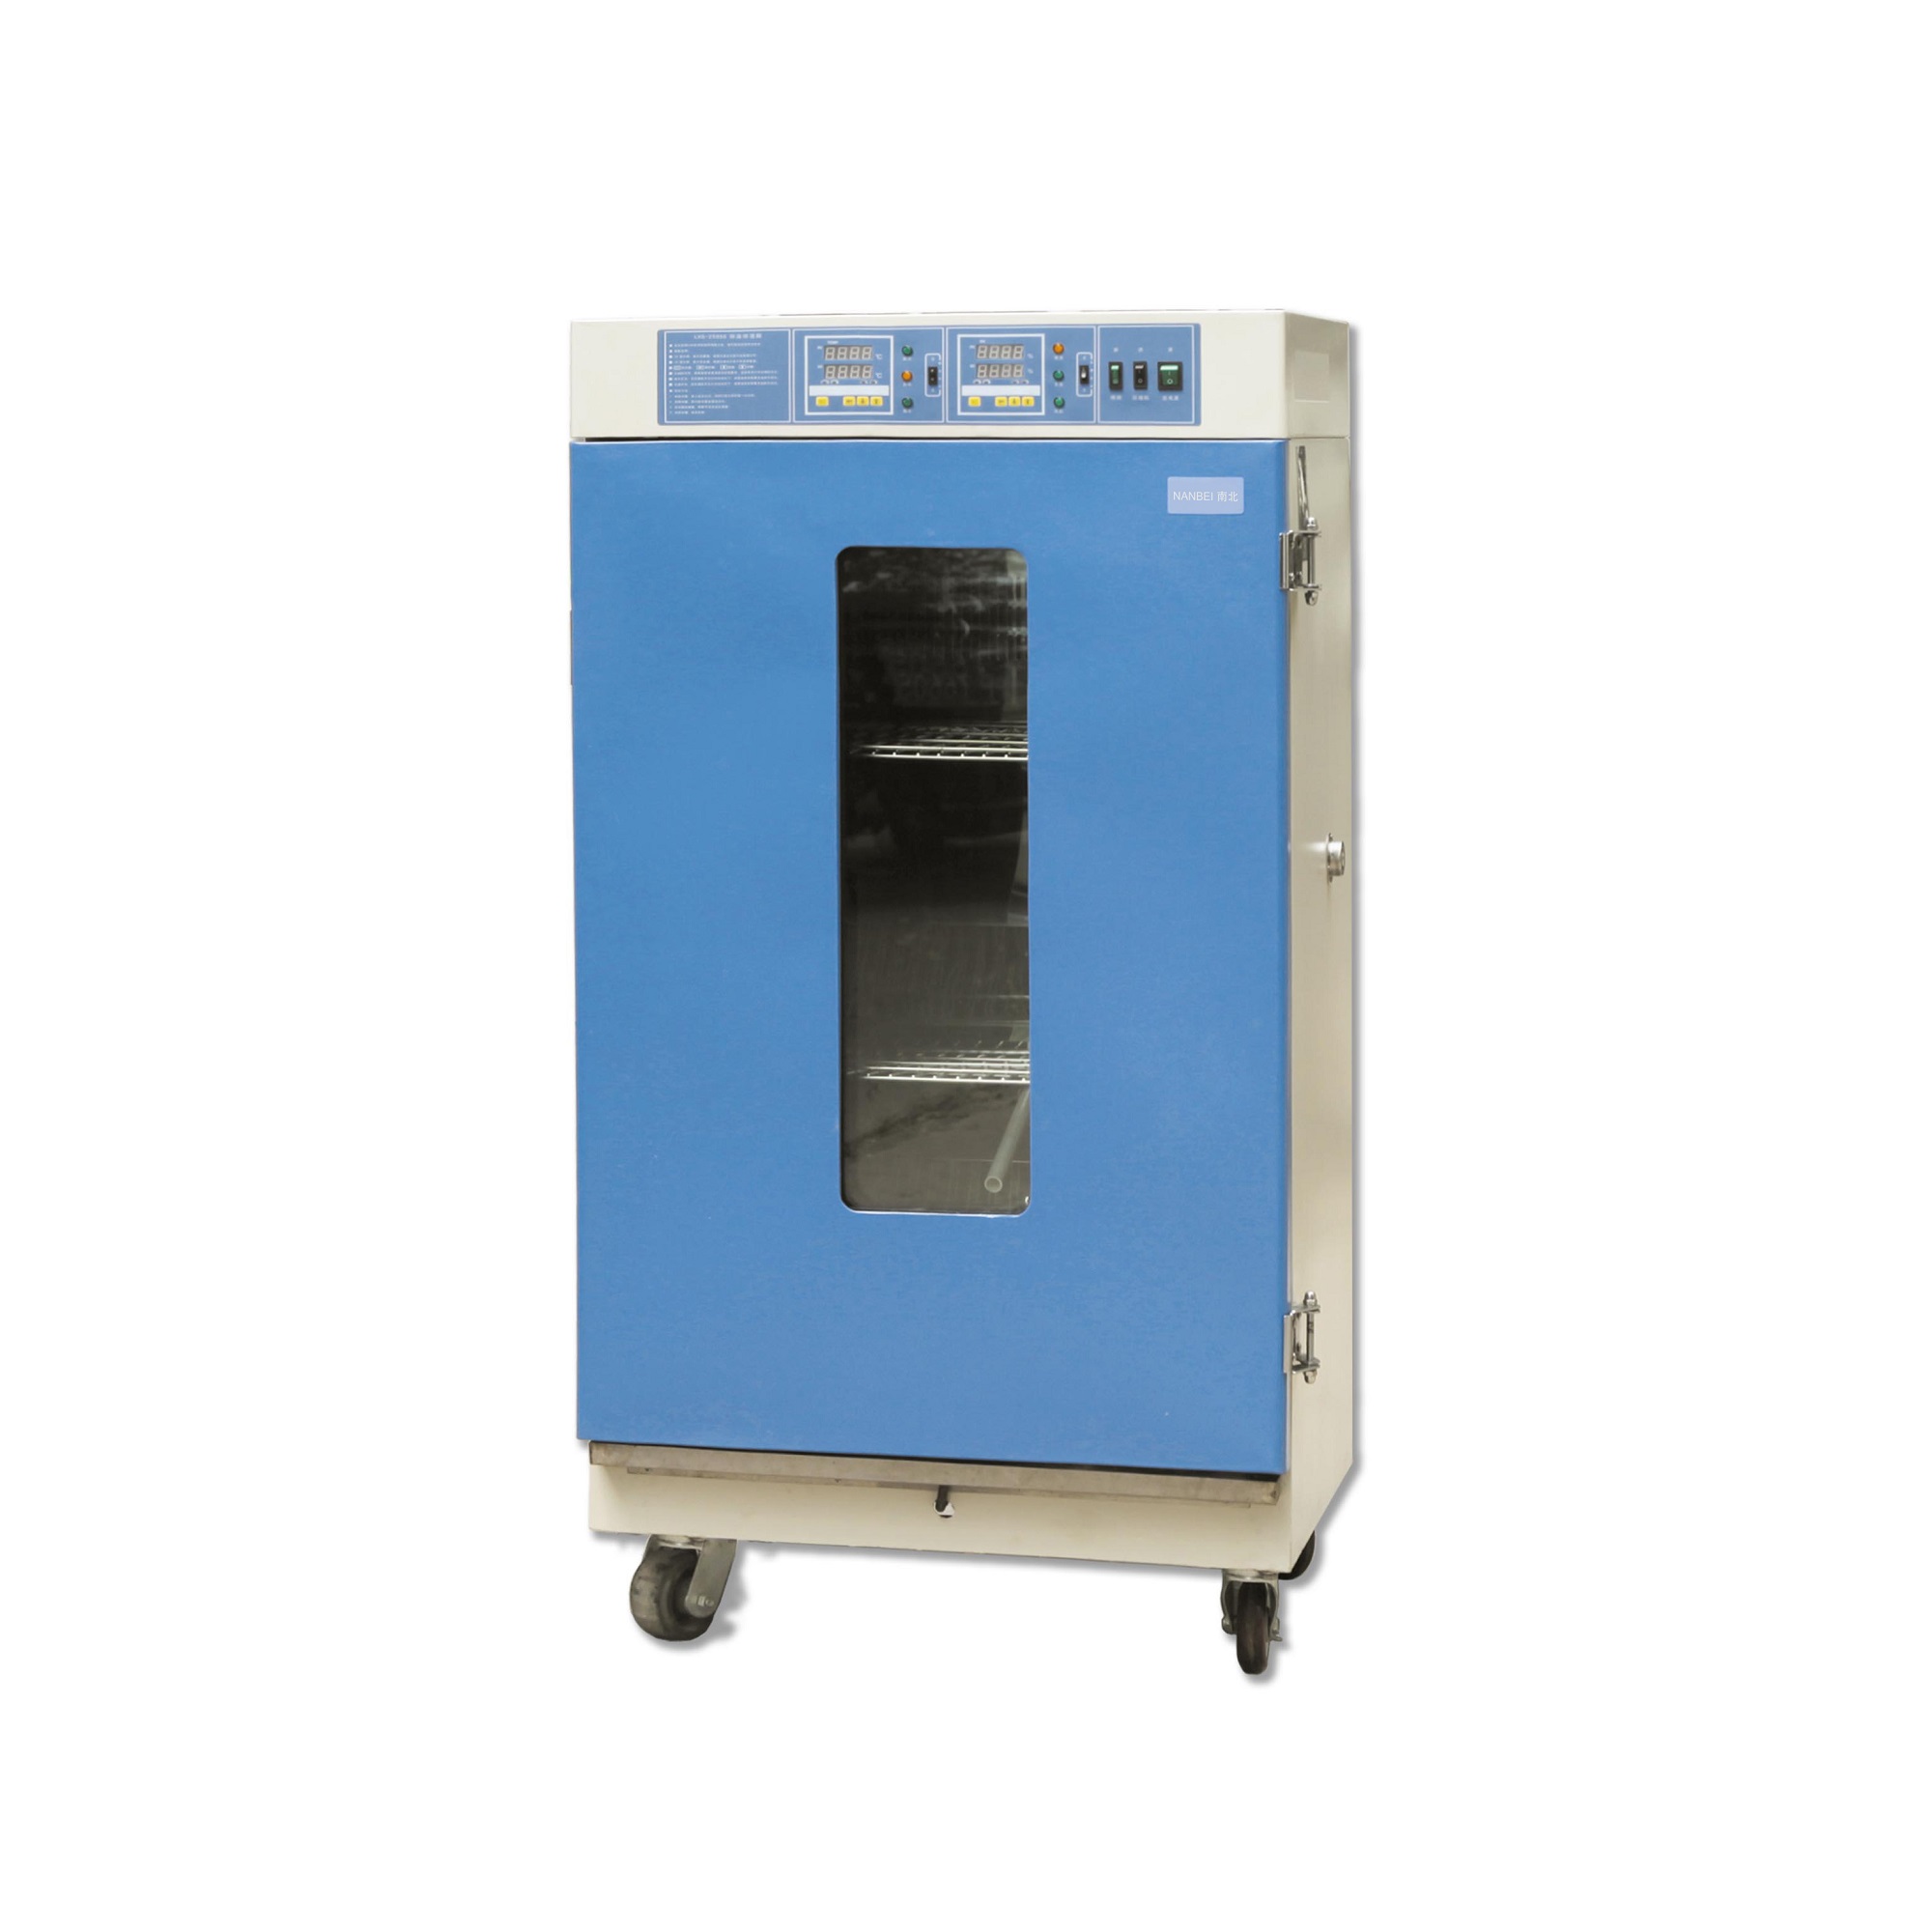 LHS-250SC inchiostratore suhu dan kelembaban konstan